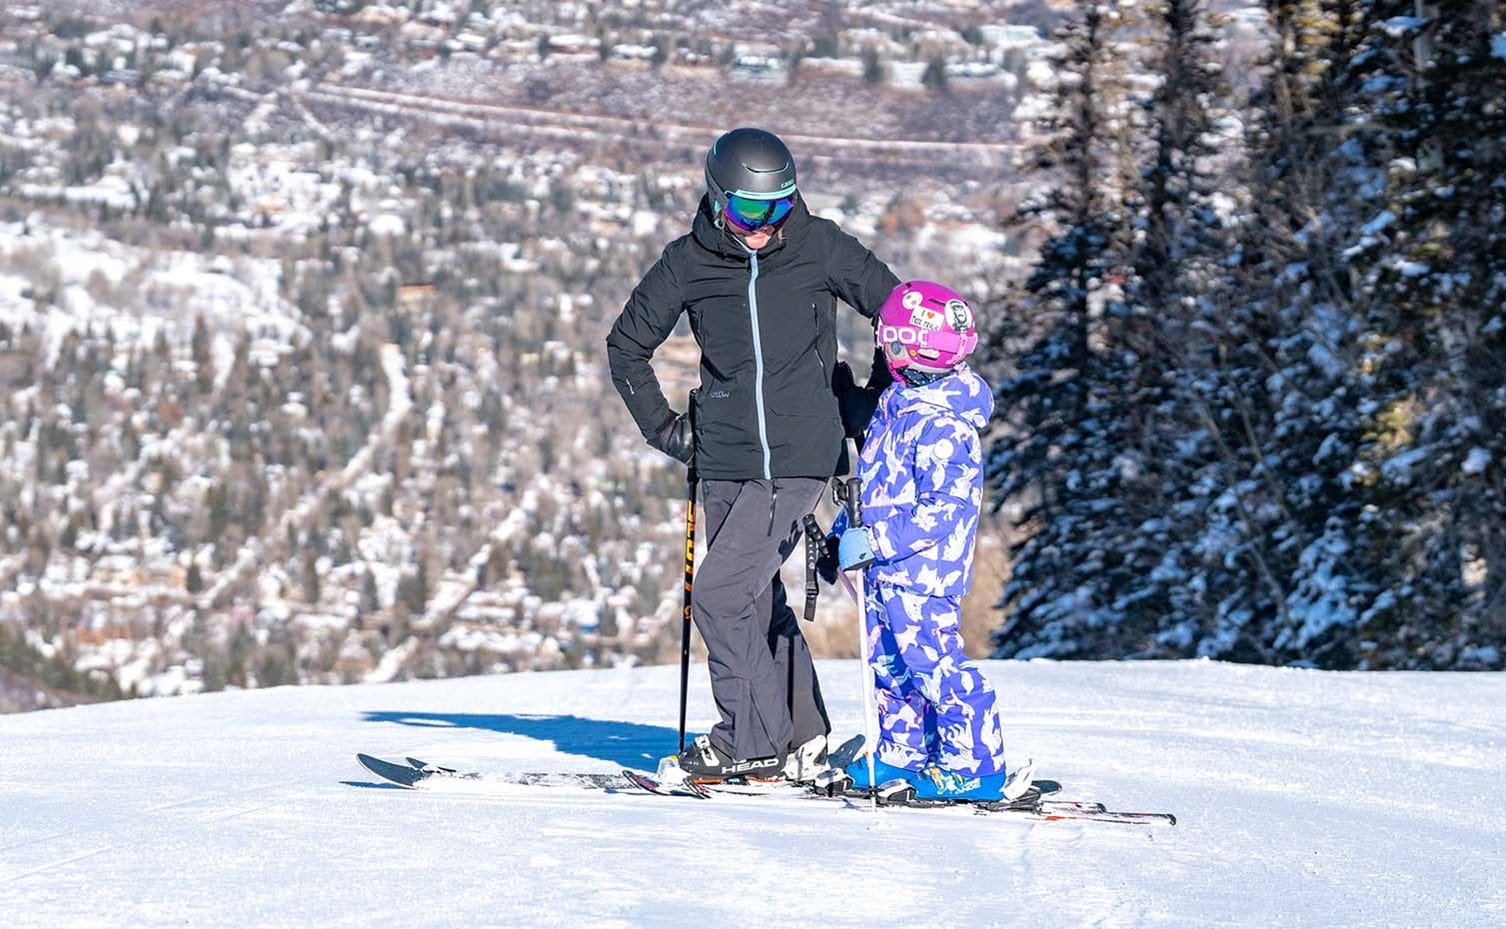 Kids Ski Free, Aspen, Promotion